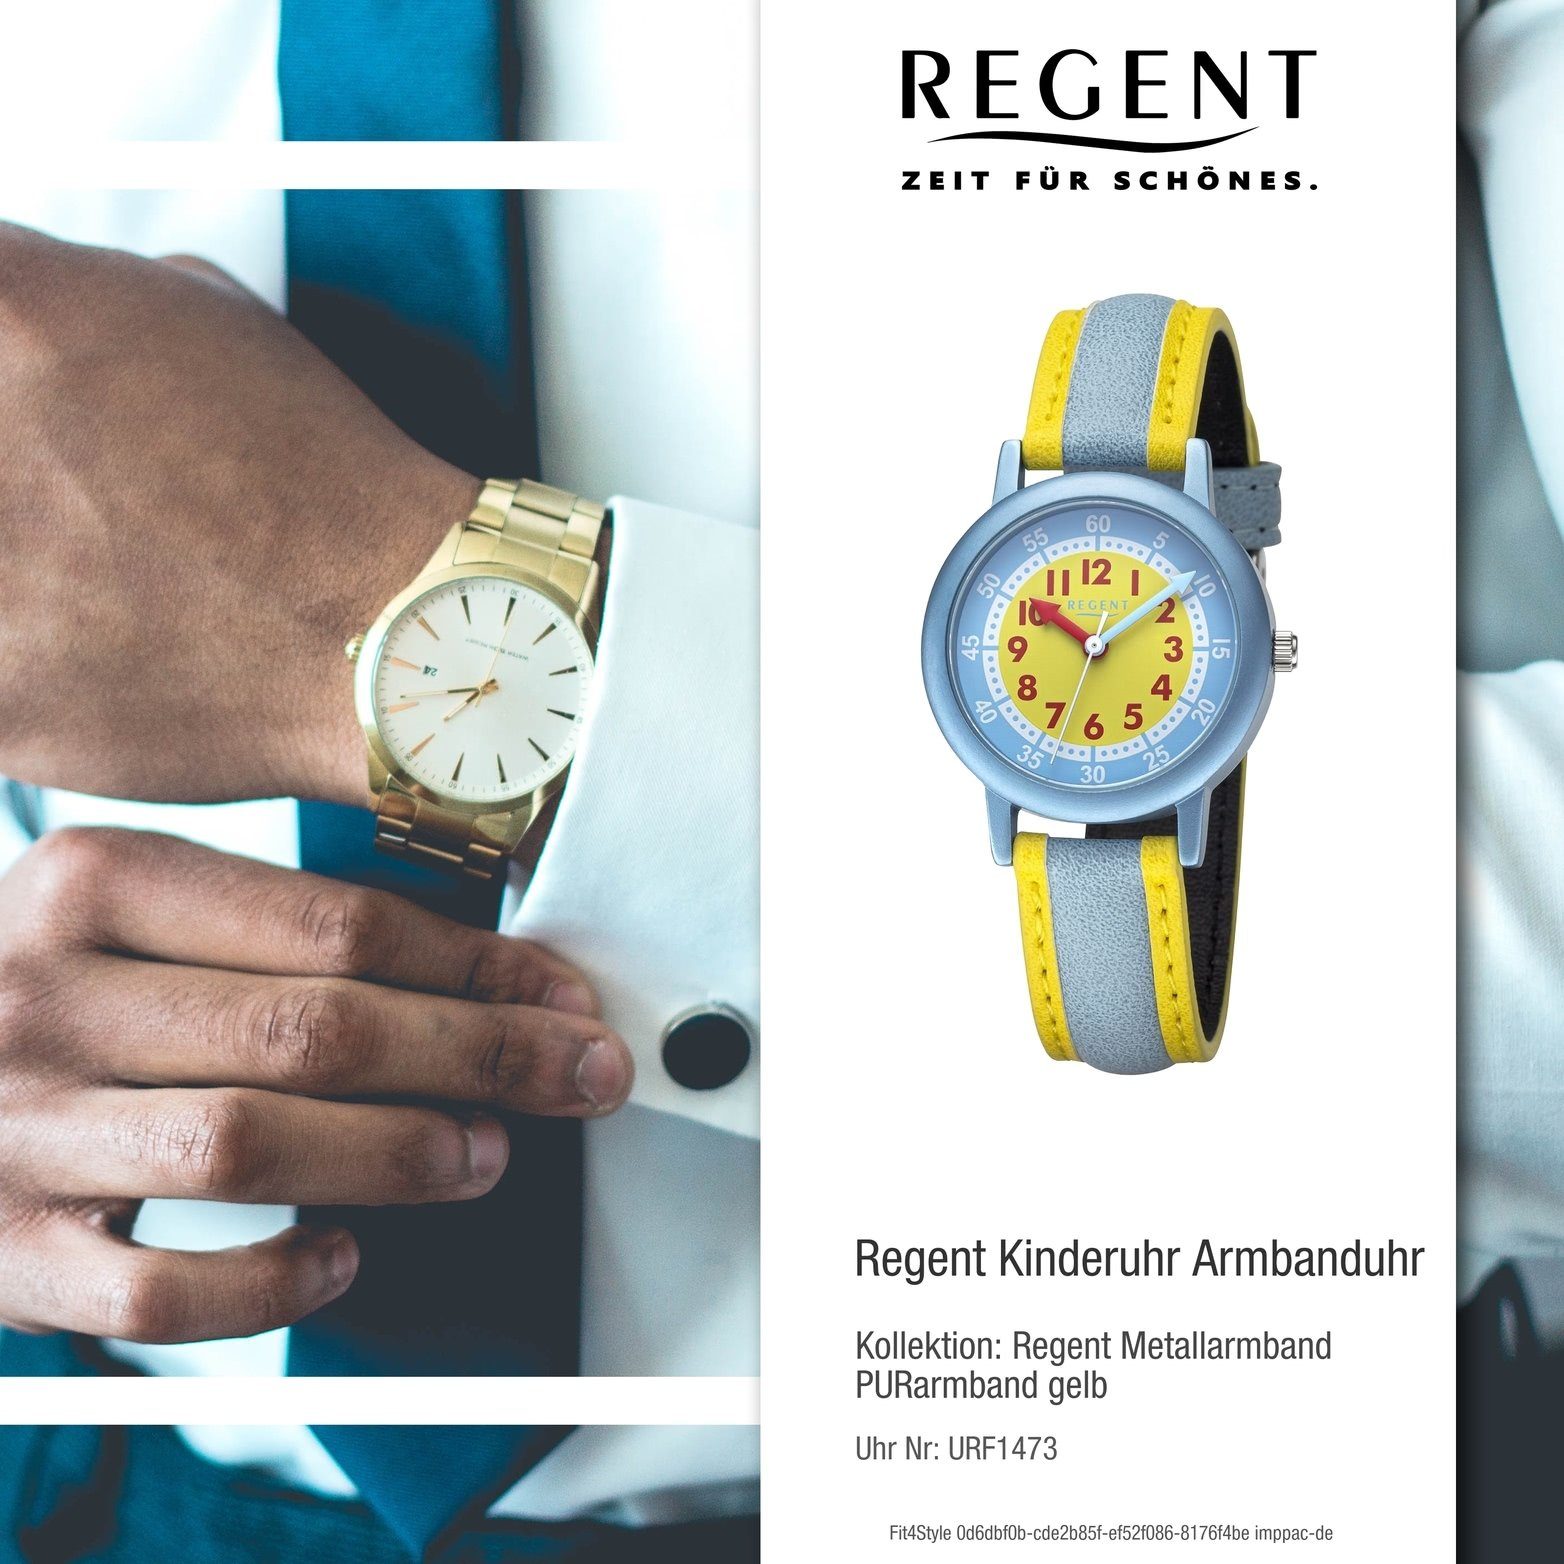 Regent Quarzuhr Regent Kinderuhr Armbanduhr Analog, Kinderuhruhr PURarmband  gelb, hellblau, rundes Gehäuse, groß (29,5mm)